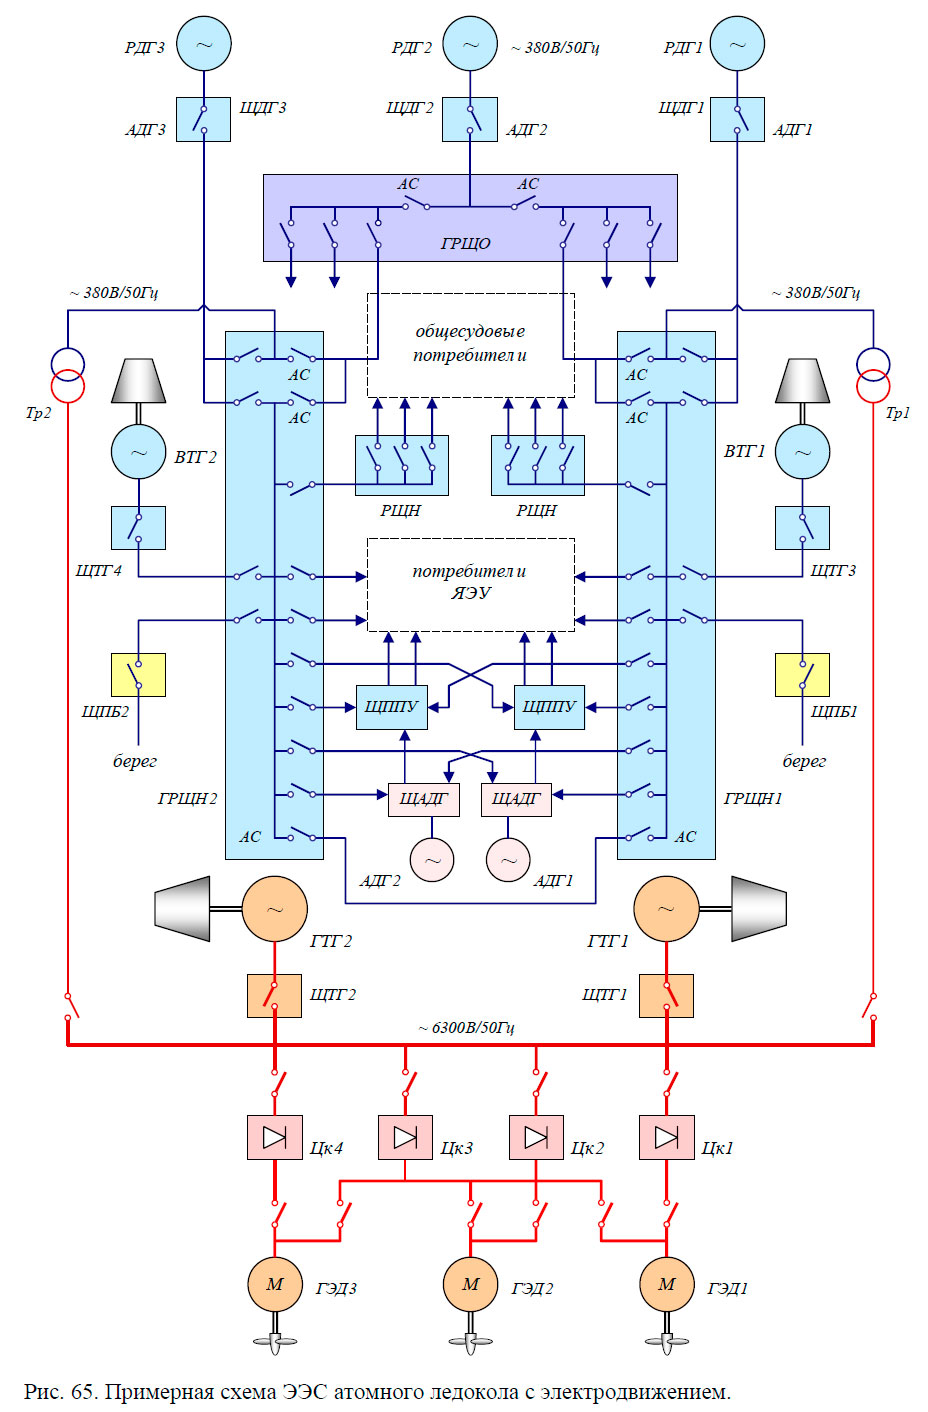 Примерная схема ЭЭС атомного ледокола с электродвижением